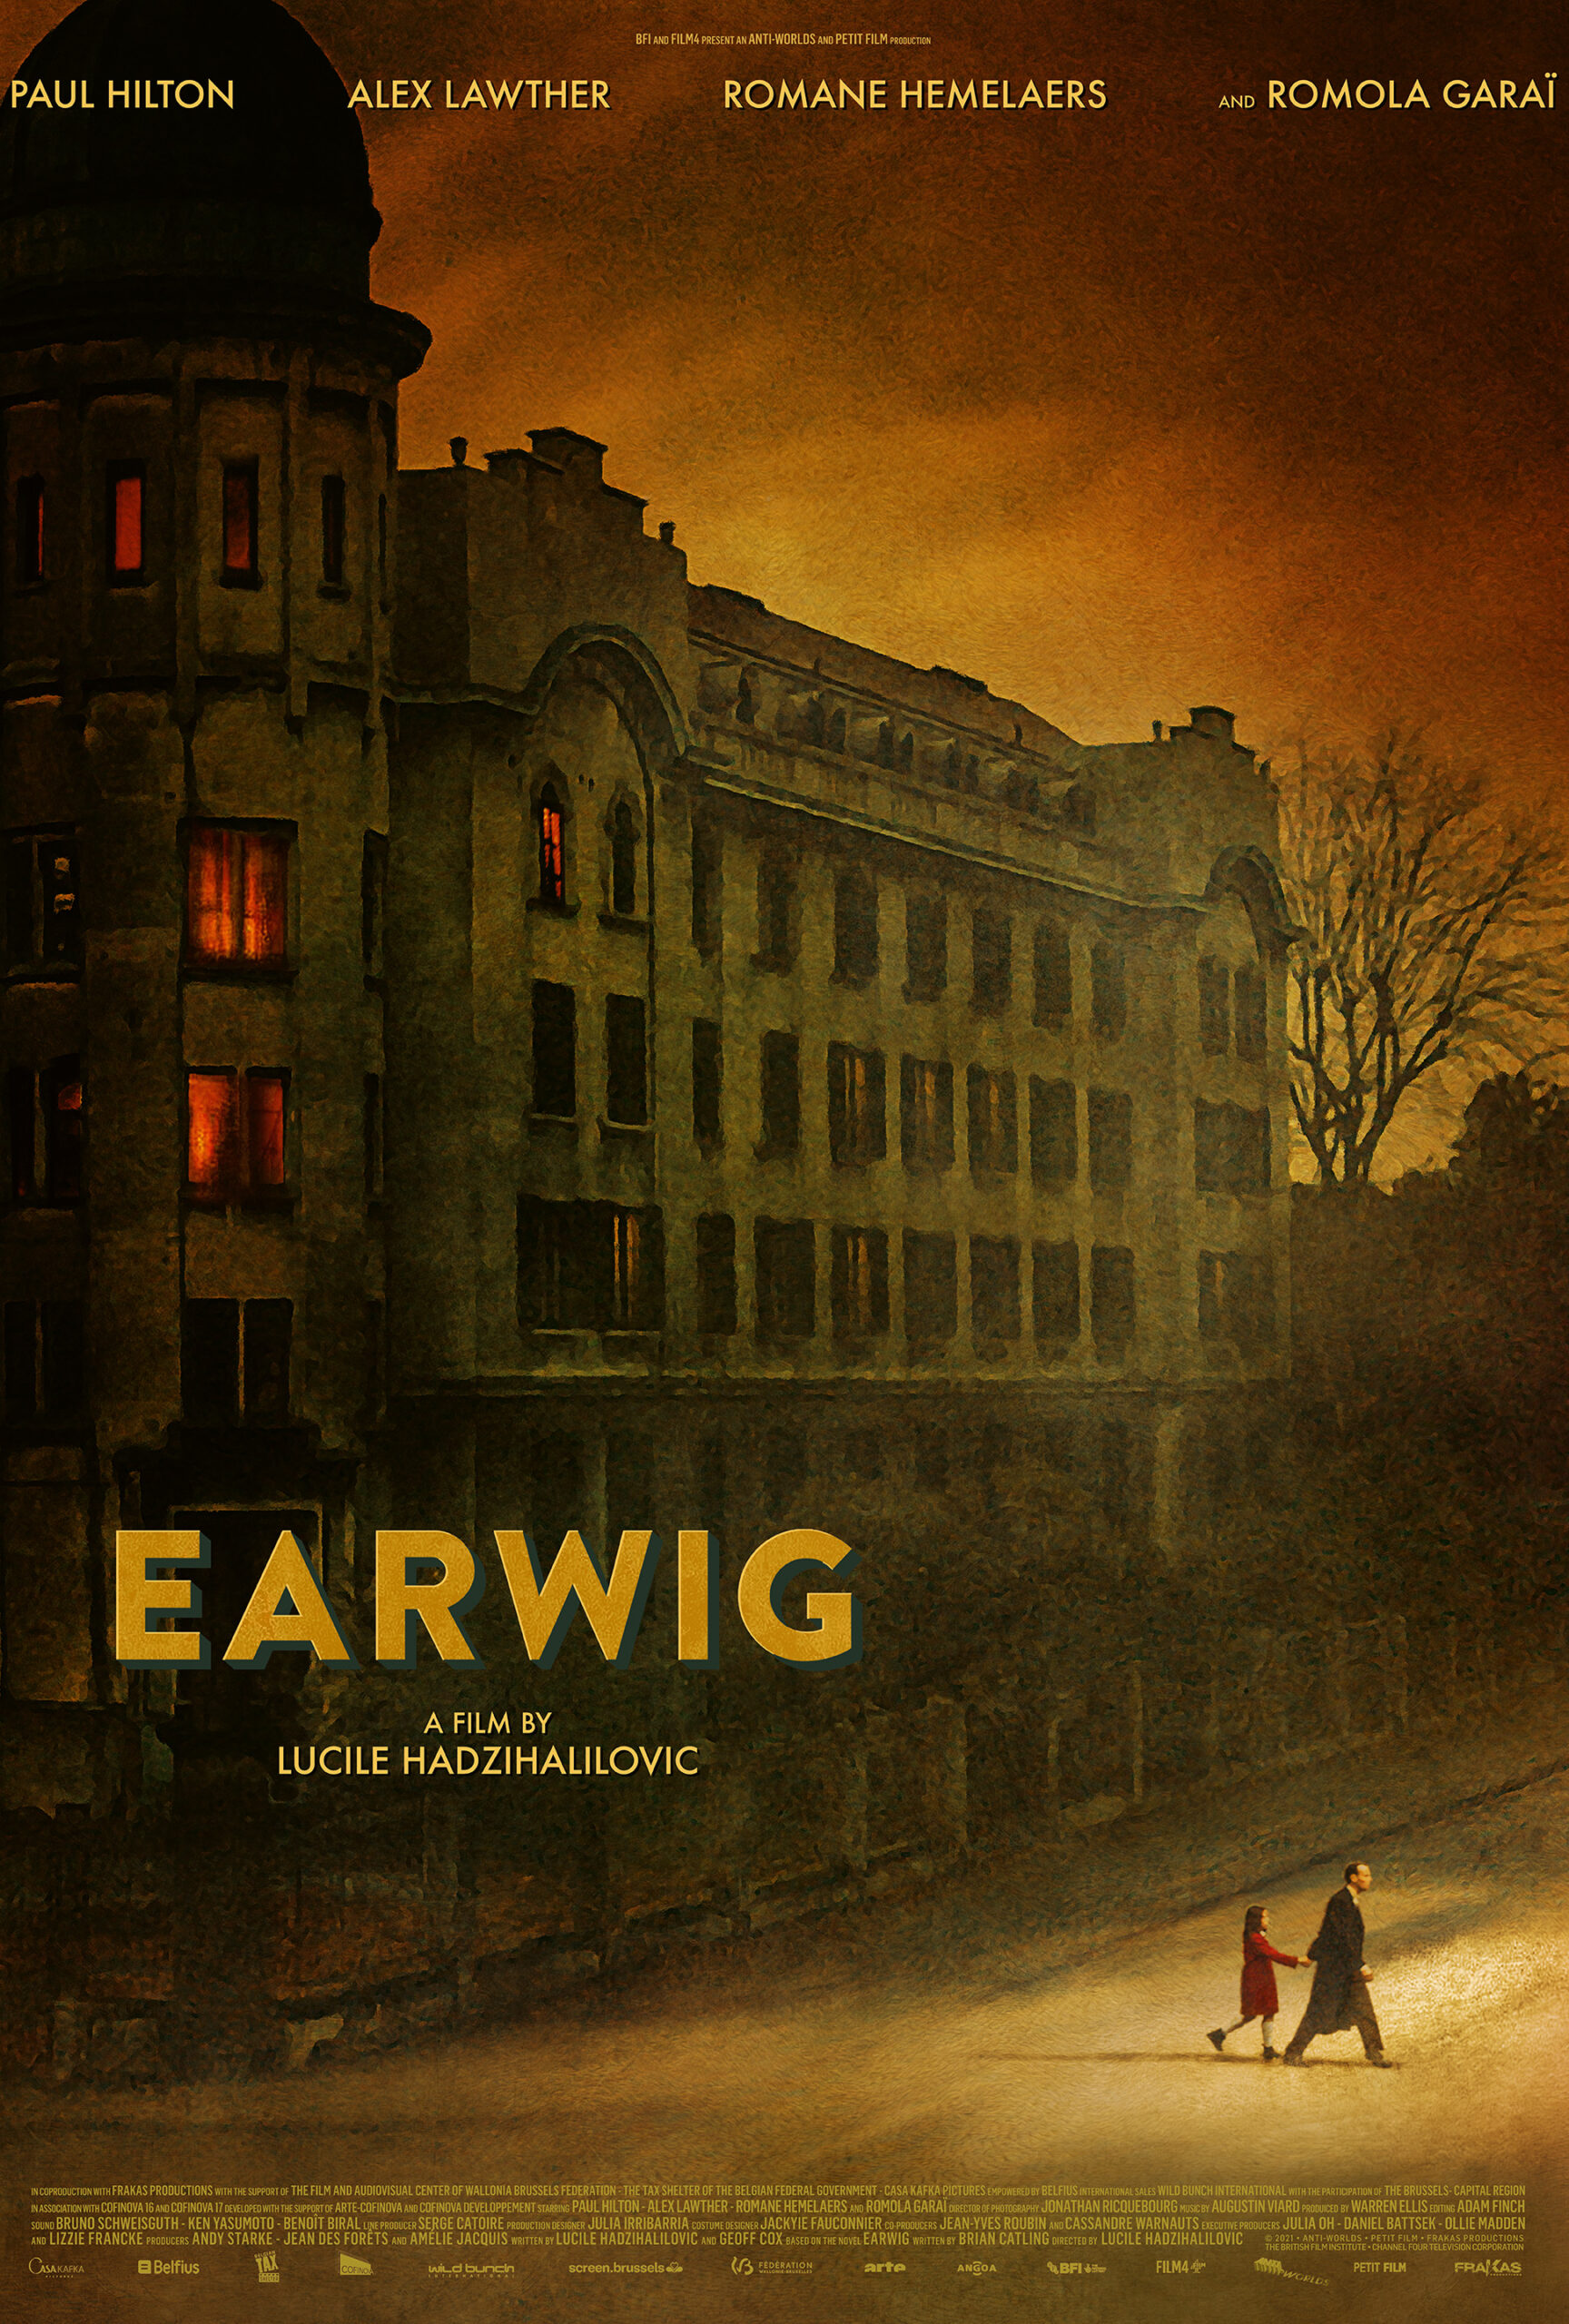 Poster Imagine Film Festival: Earwig